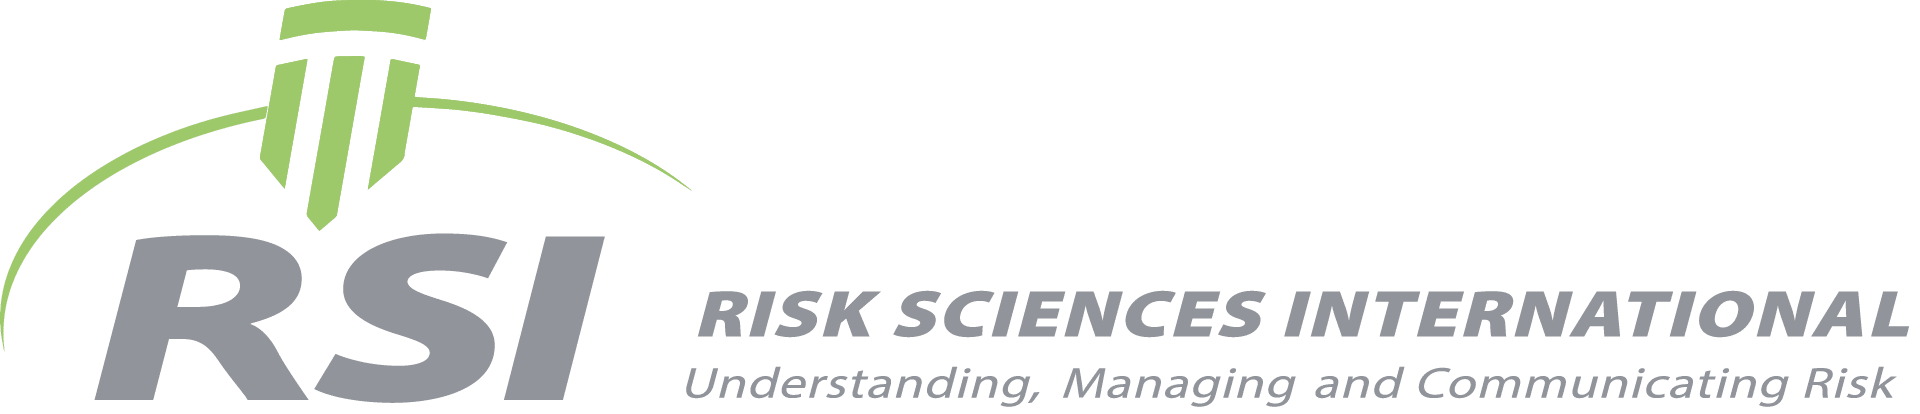 Risk Sciences International website banner